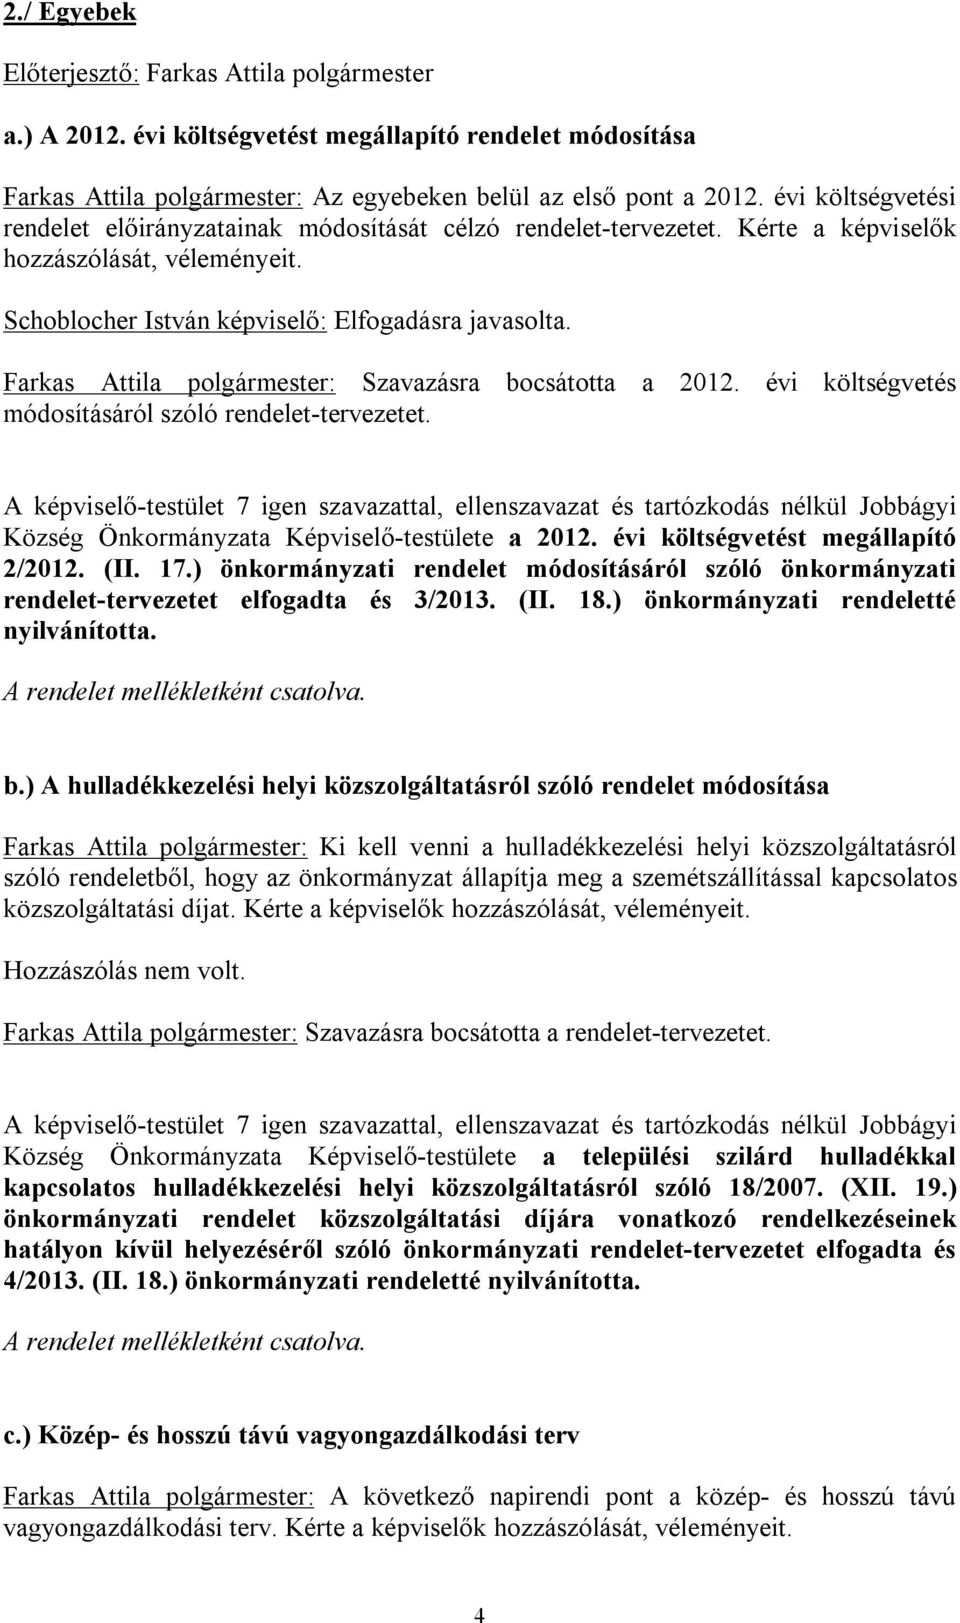 Farkas Attila polgármester: Szavazásra bocsátotta a 2012. évi költségvetés módosításáról szóló rendelet-tervezetet.